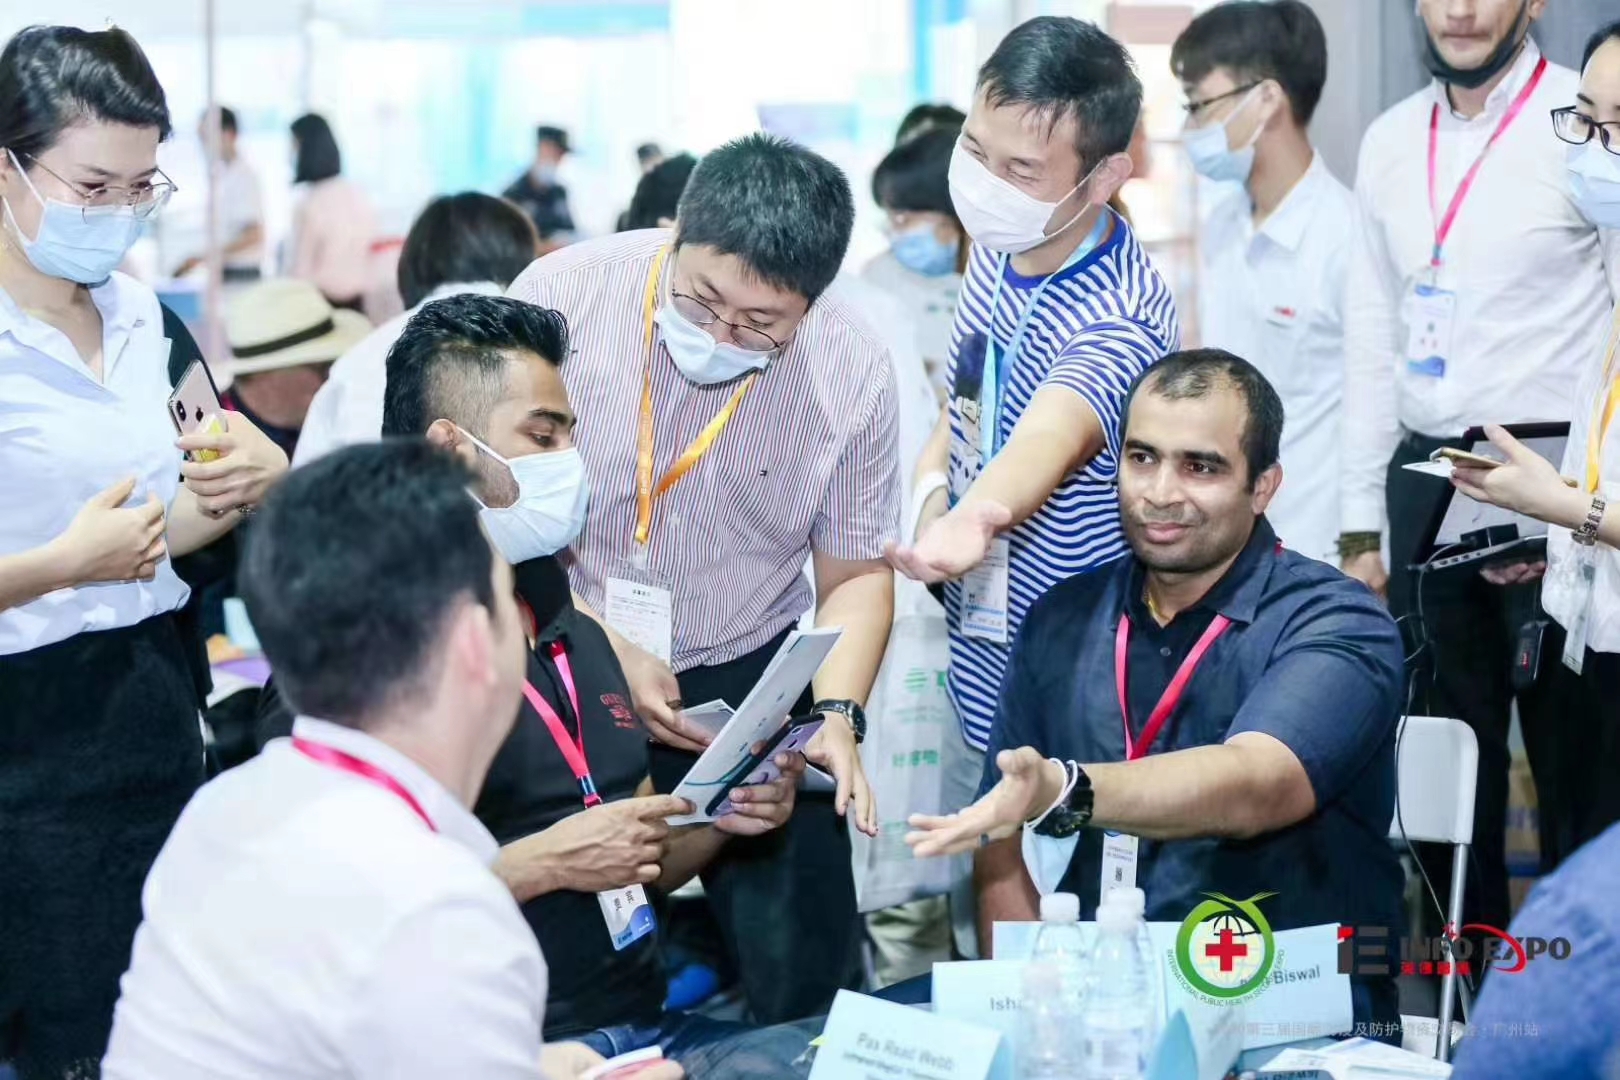 第五届国际公共医疗卫生基建储备及防控防疫技术产品(广州)展